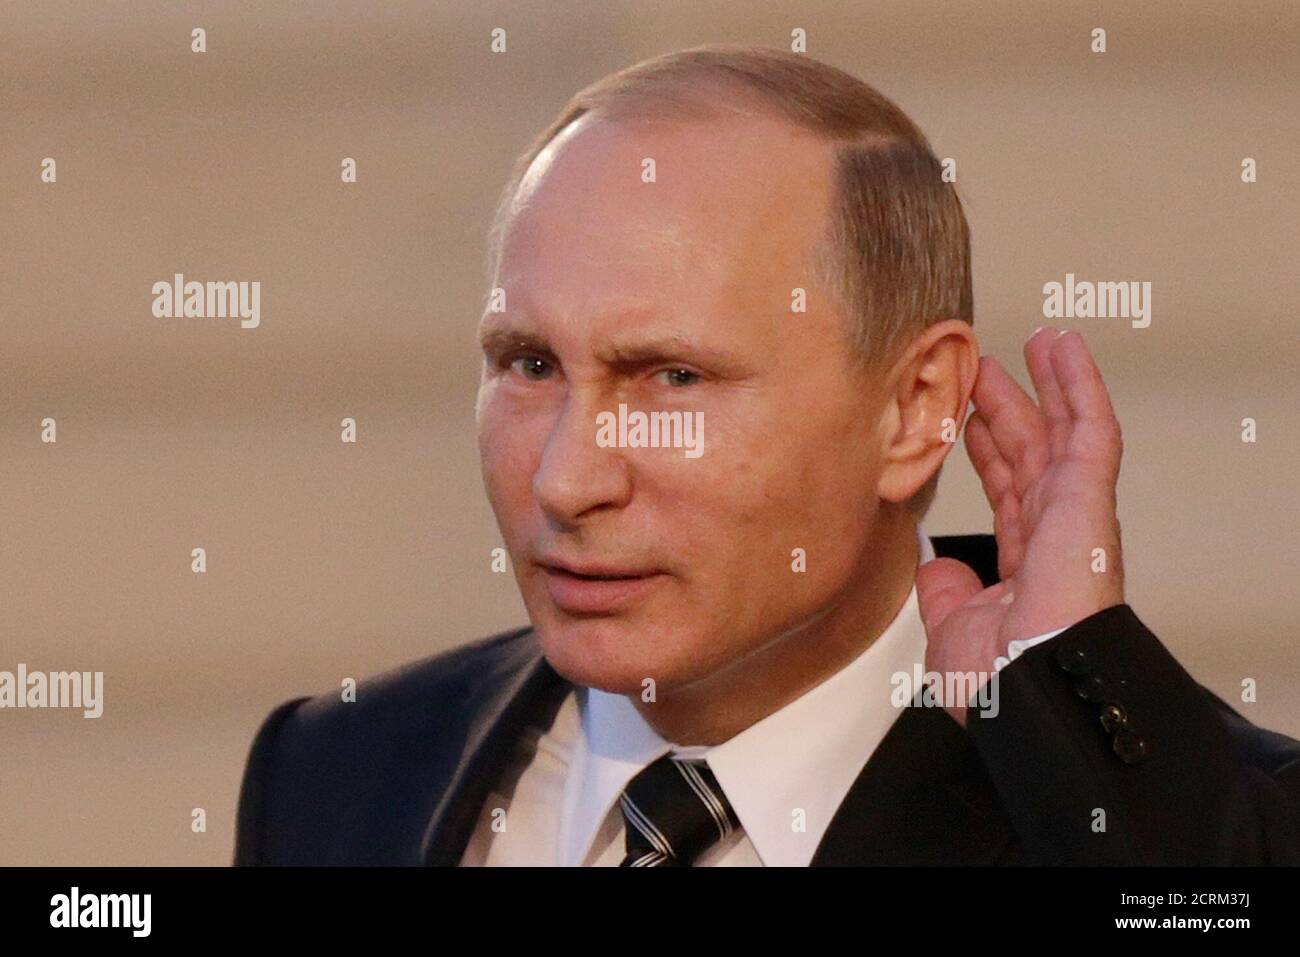 le-president-russe-vladimir-poutine-tient-son-oreille-pour-ecouter-une-question-alors-qu-il-part-apres-un-sommet-sur-la-crise-ukrainienne-a-l-elysee-a-paris-france-le-2-octobre-2015-la-france-a-accueilli-a-paris-une-reunion-avec-les-dirigeants-de-la-russie-de-l-allemagne-et-de-l-ukraine-pour-des-discussions-sur-l-ukraine-reuters-philippe-wojazer-2crm37j.jpg